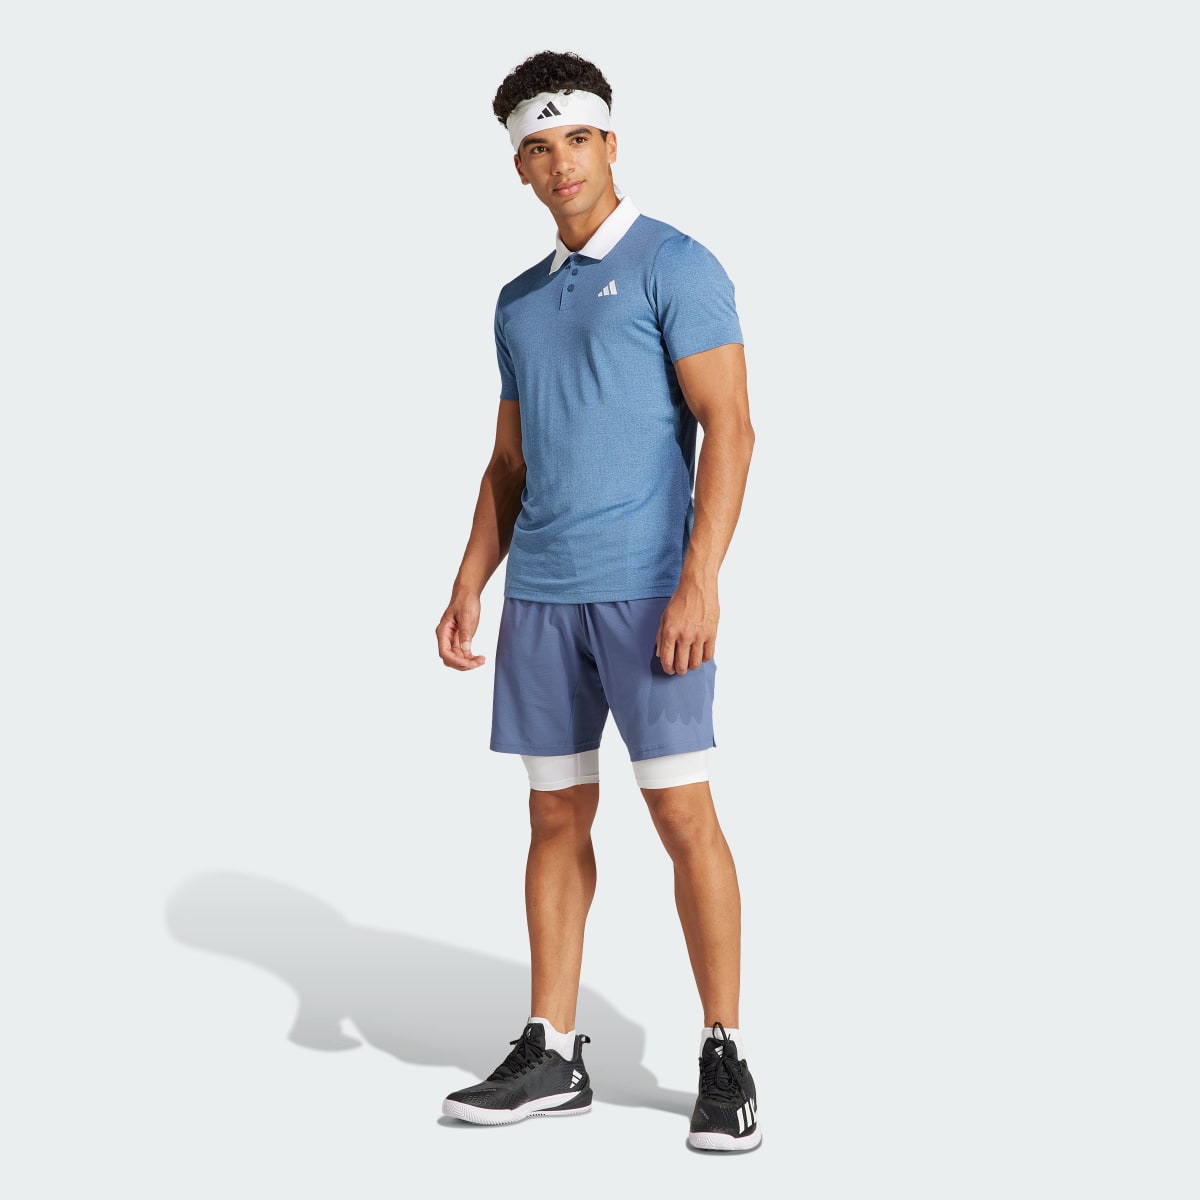 Adidas Tennis Ergo Shorts. 5